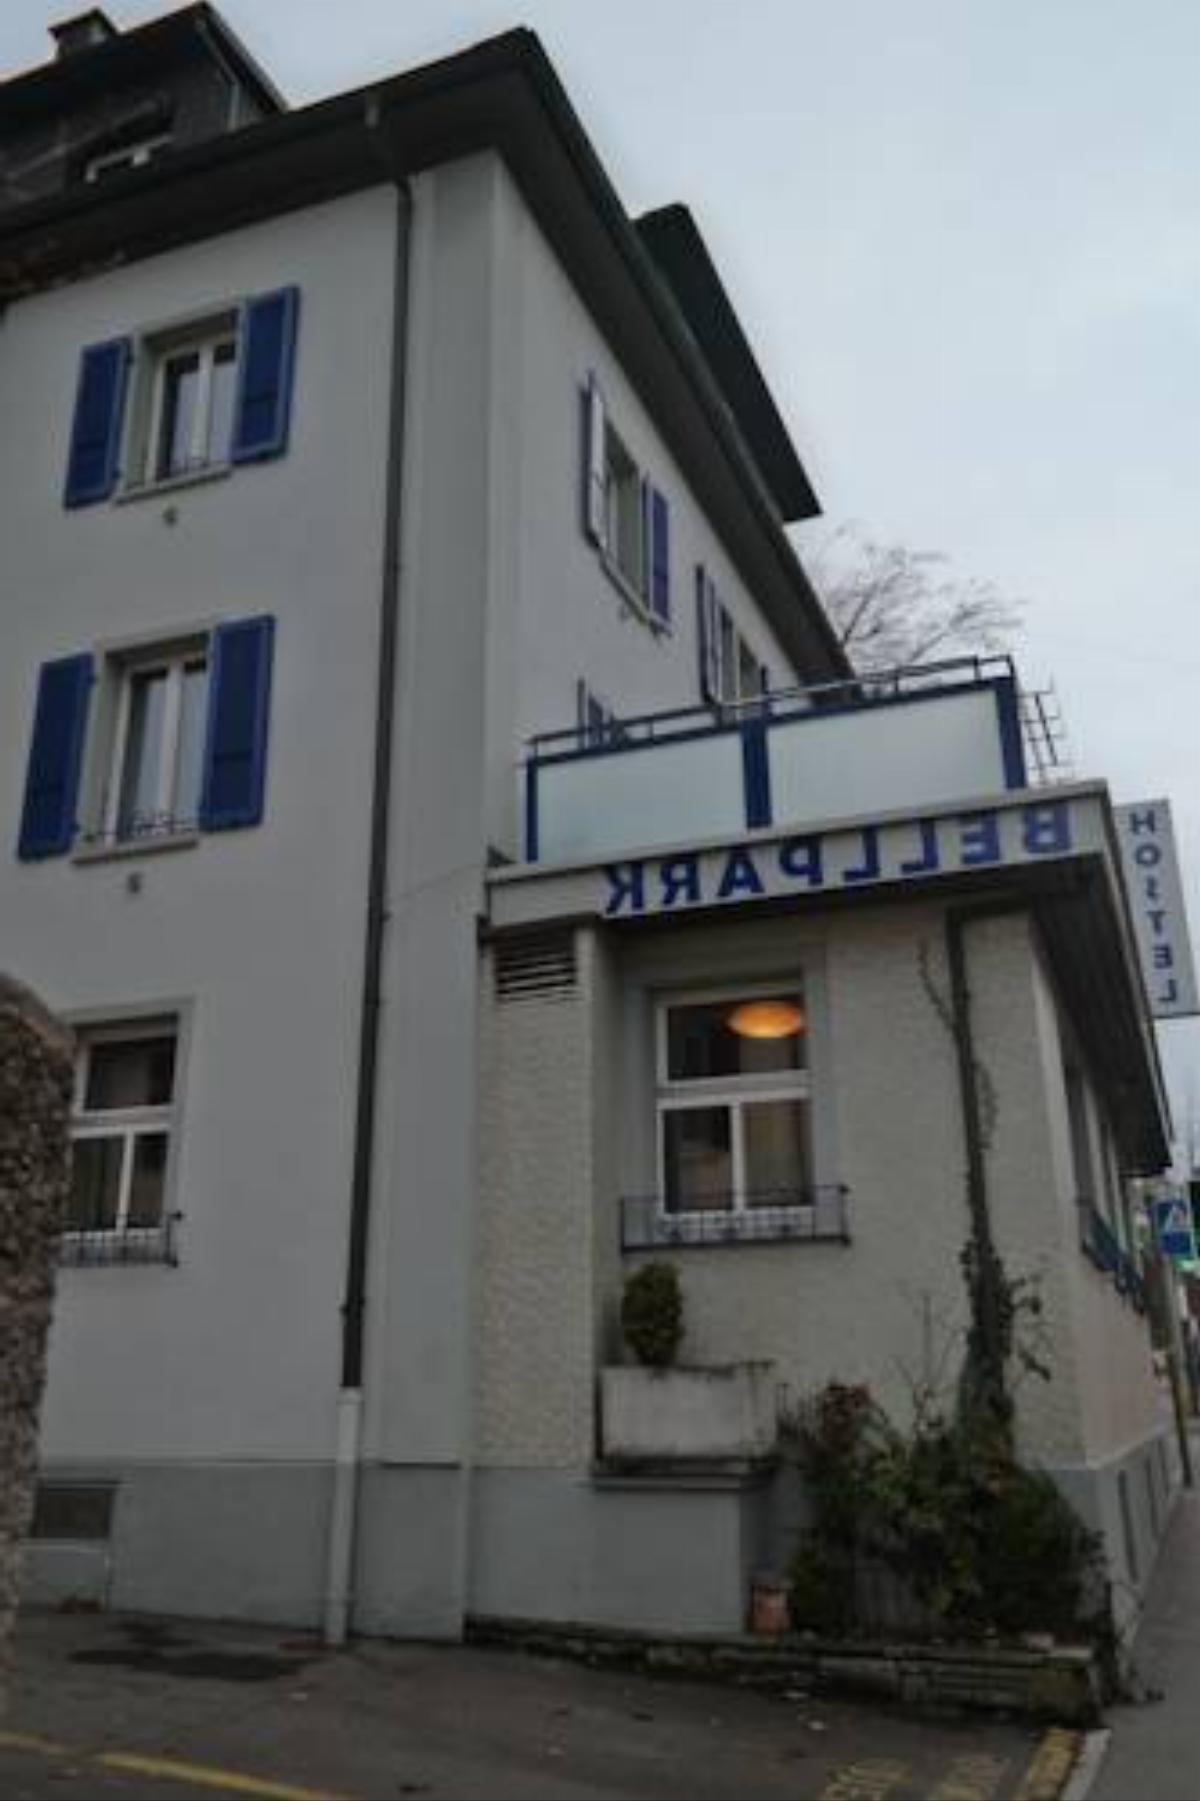 Bellpark Hostel Hotel Luzern Switzerland